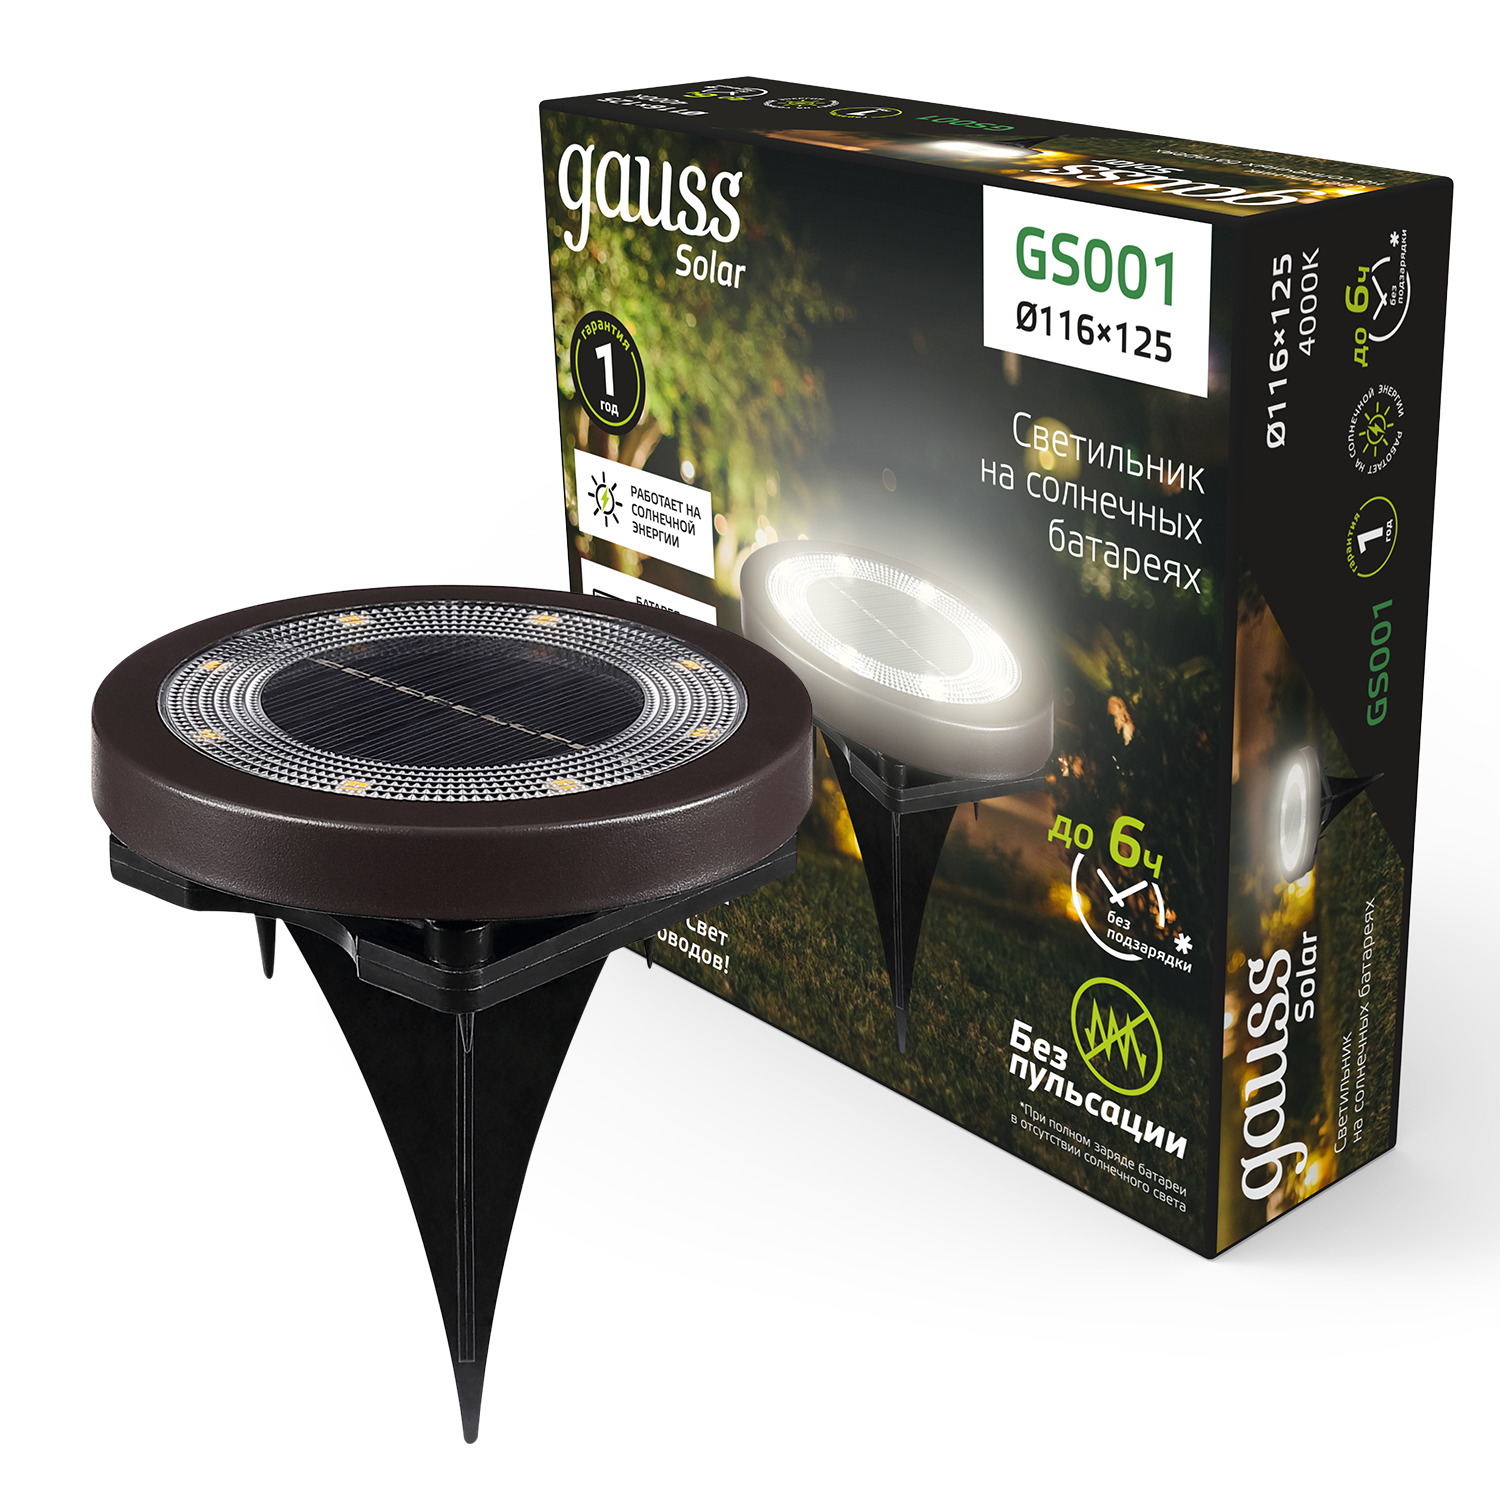 Где купить Светильник садовый Gauss GS001 на солнечных батареях Gauss 